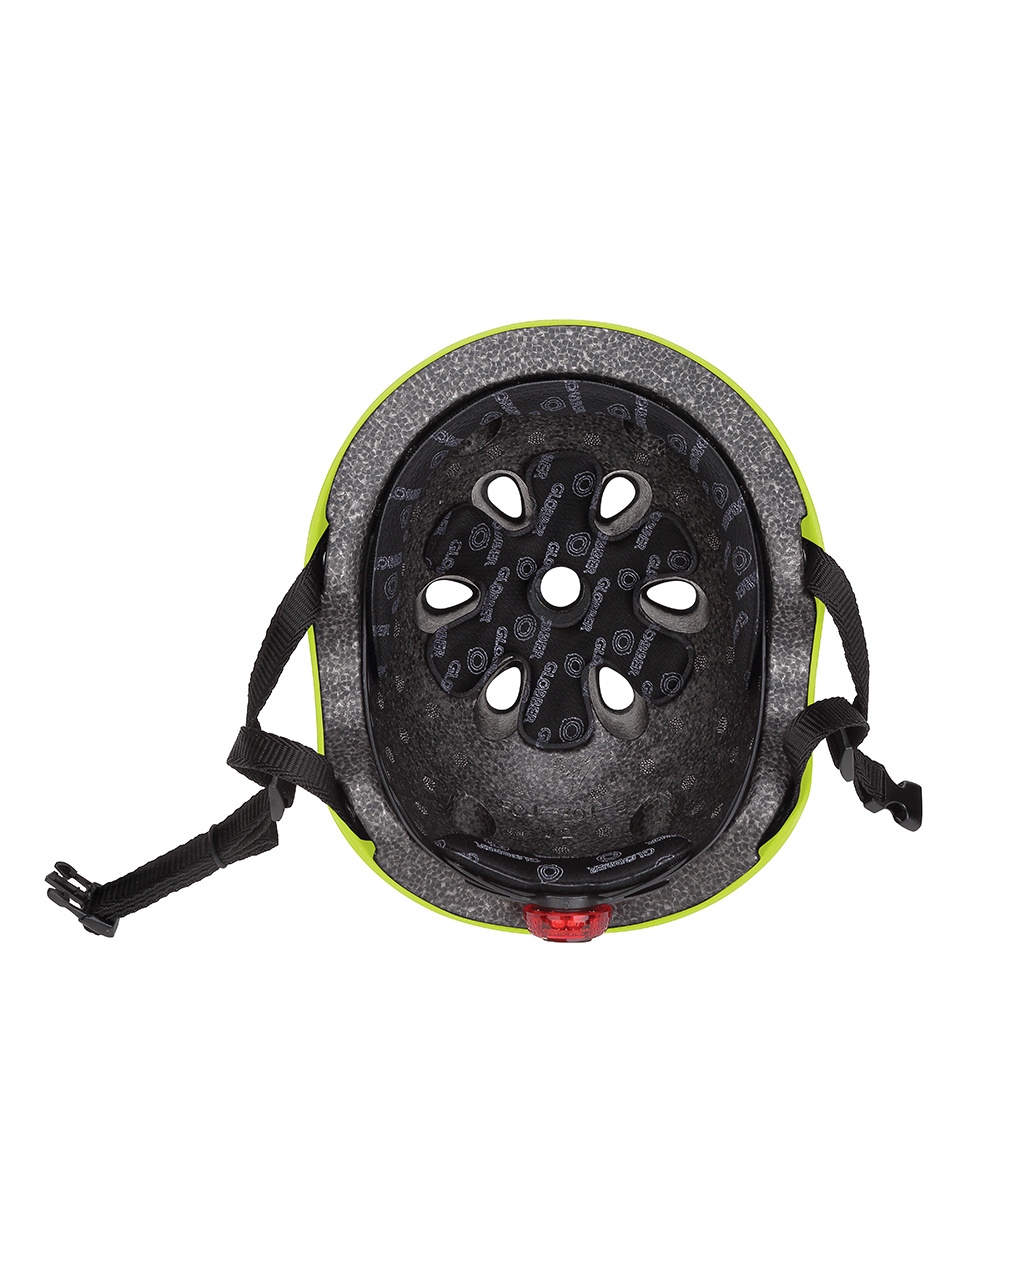 Caschetto helmet light xs/s (48-53 cm) - verde lime - globber - Globber